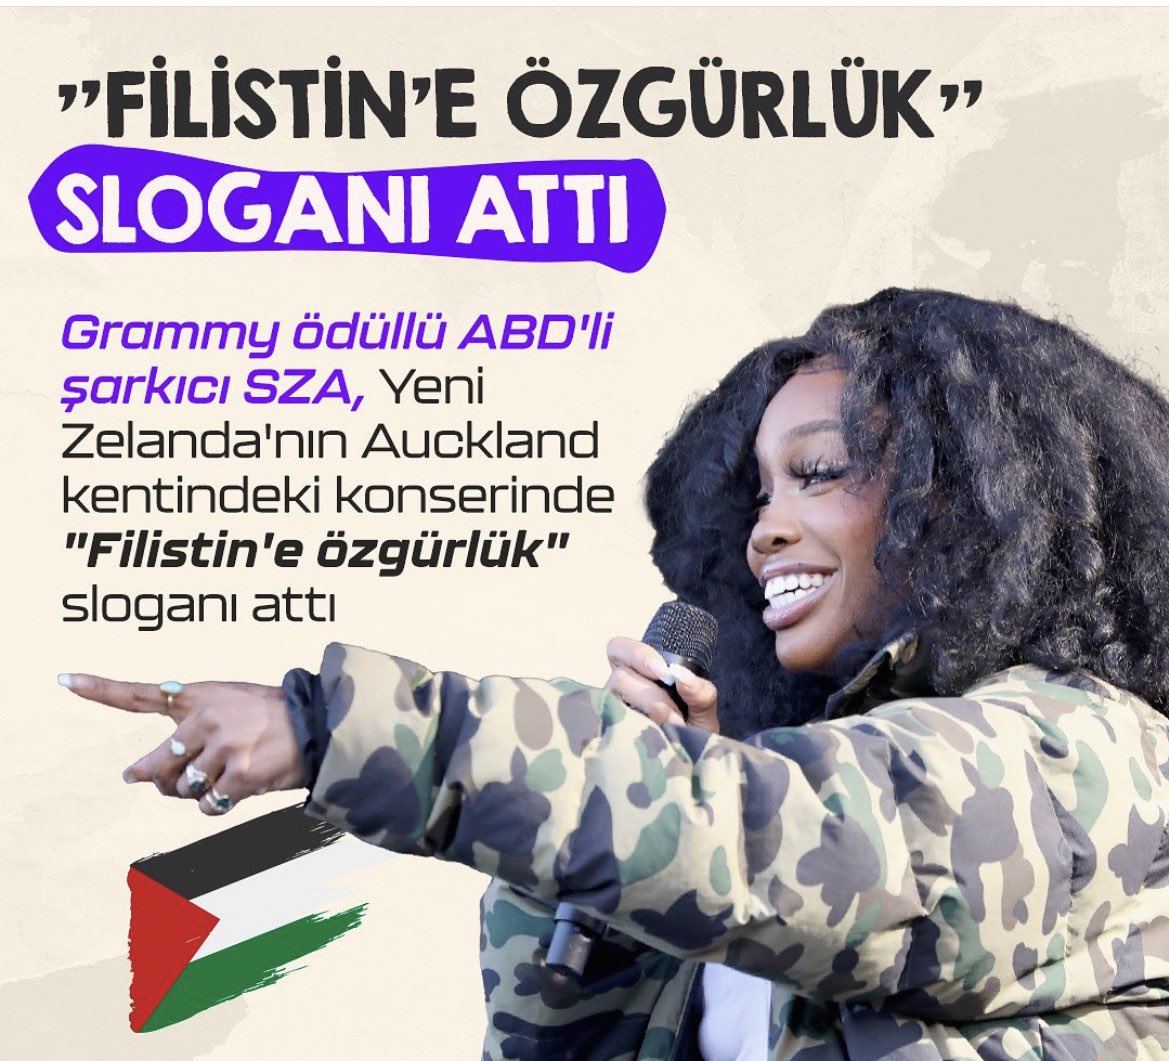 Grammy ödülü ABD li şarkıcı SZA konserinde “Filistin’e özgürlük” sloganı attı. Bizim sanatçılarda reklam gelirleri ve konserleri kesilir korkusuyla suskunları oynuyorlar.